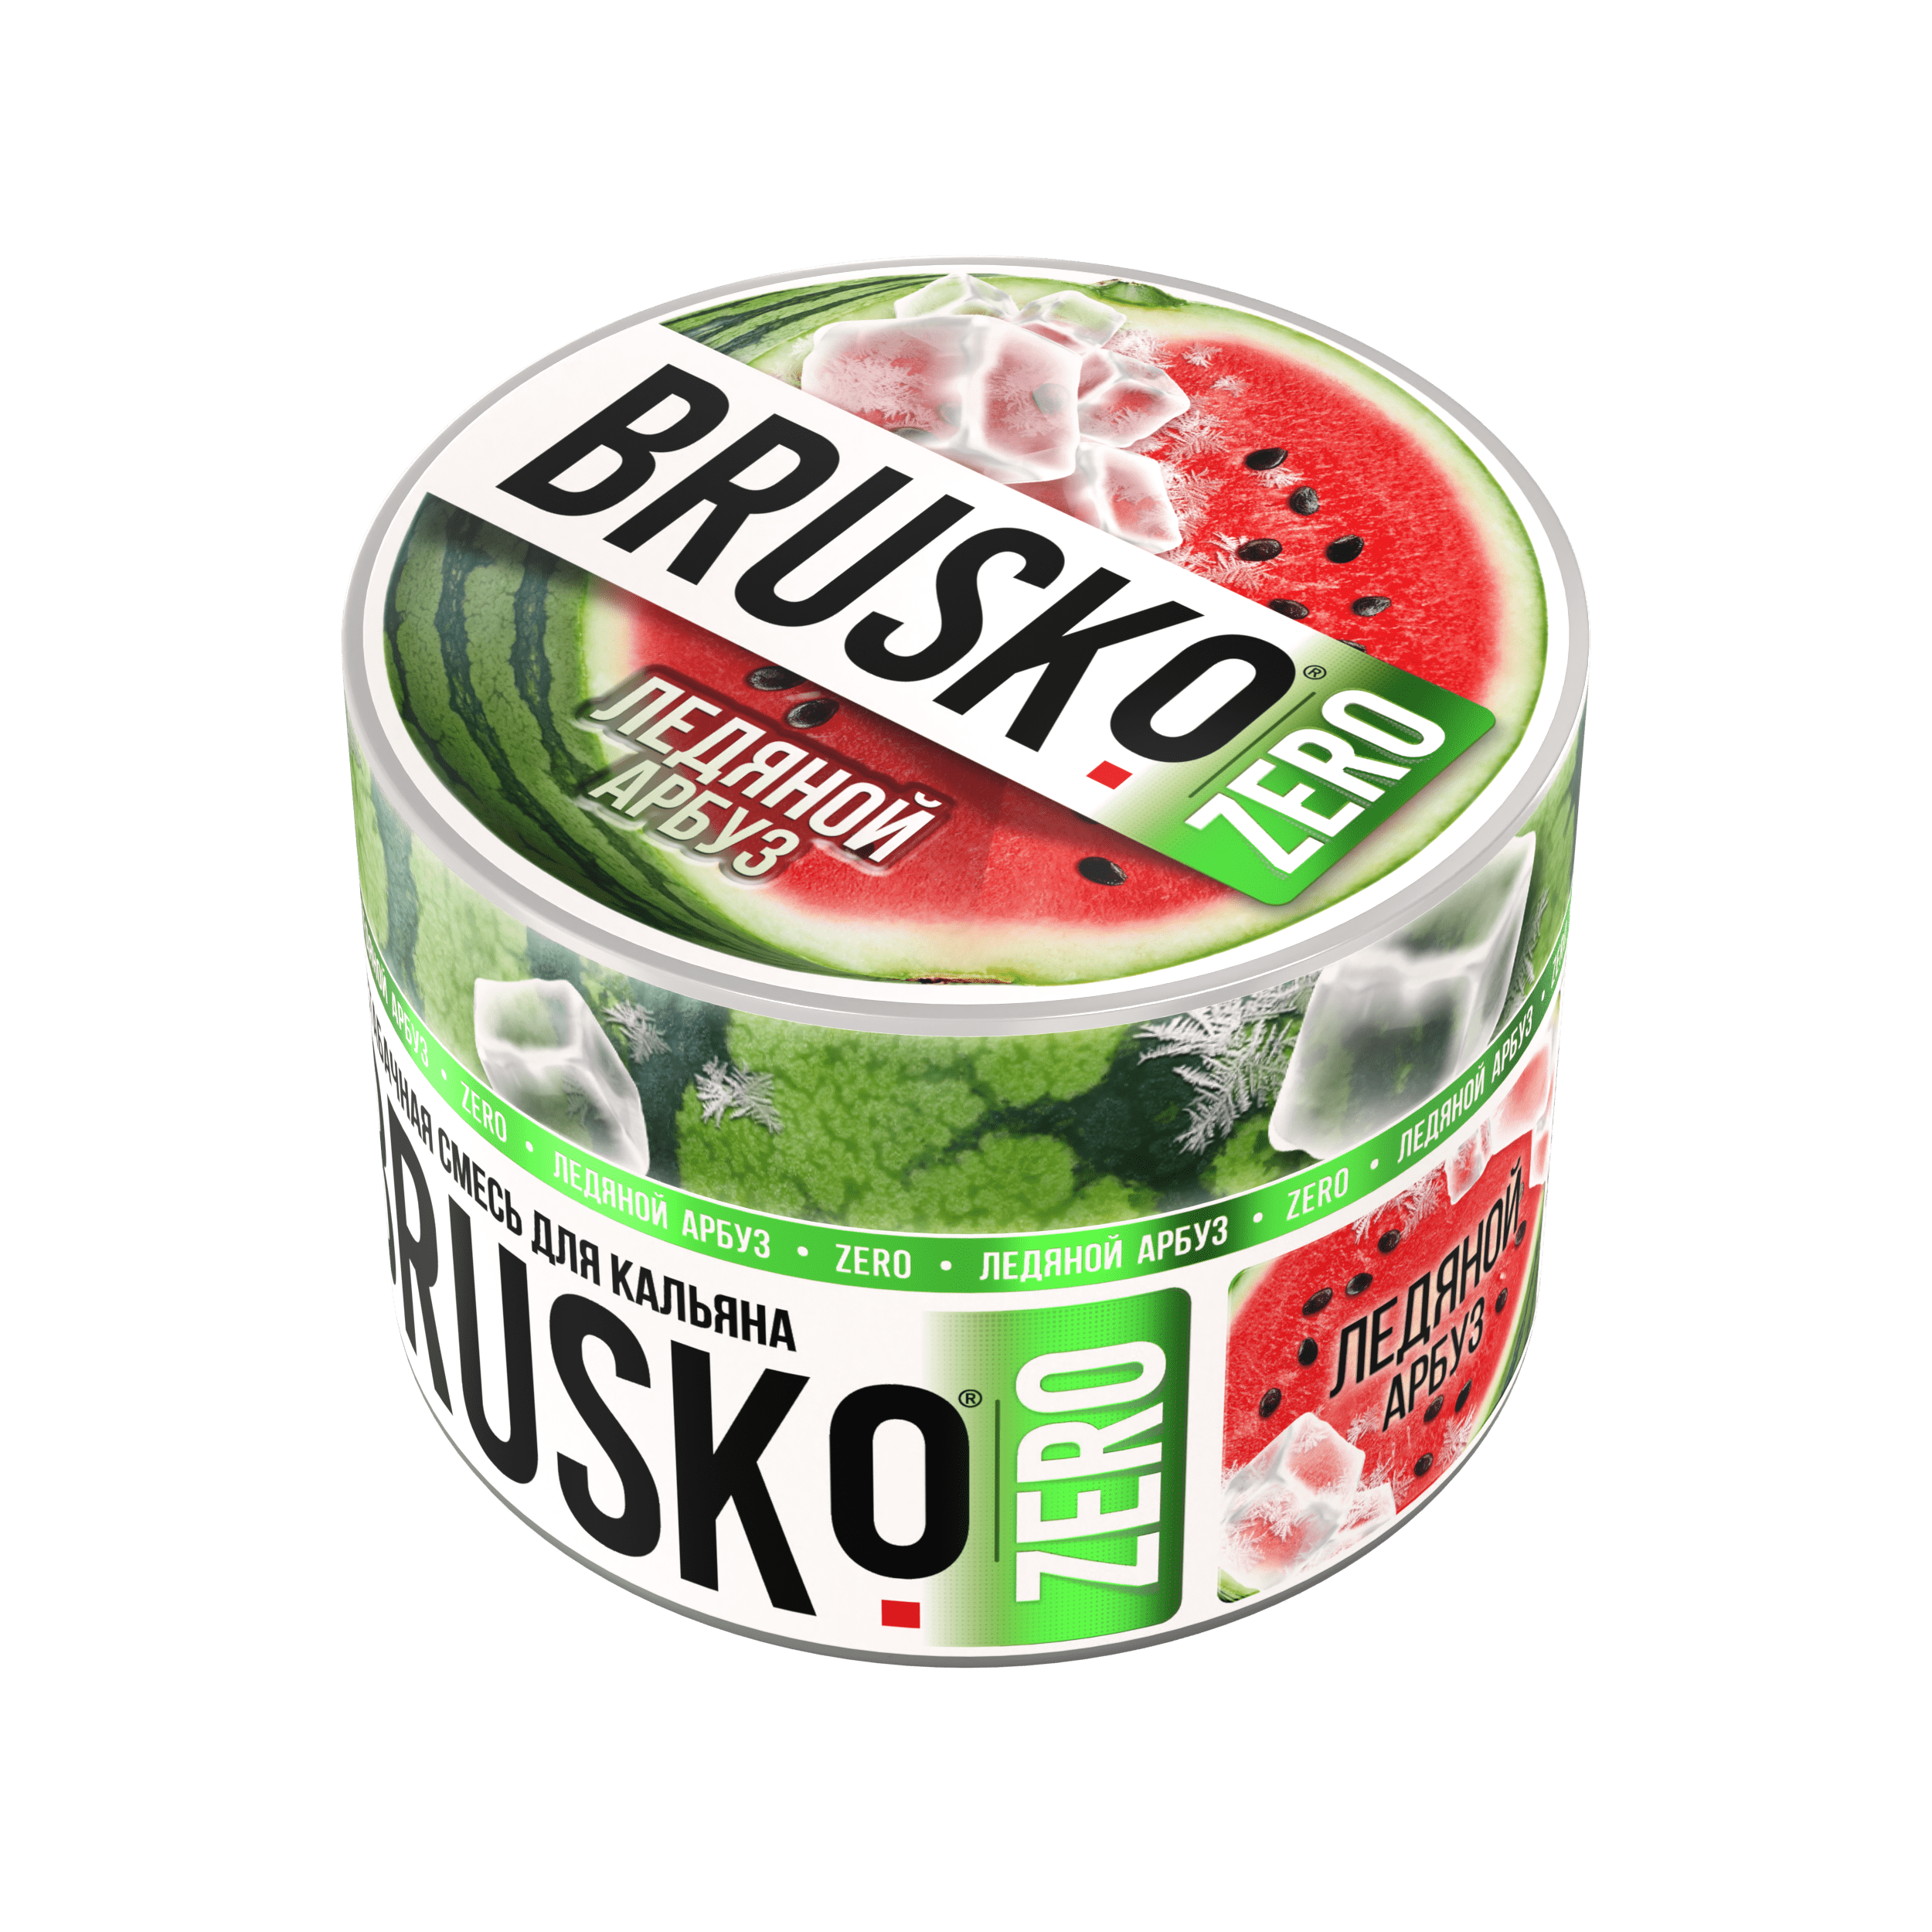 Бестабачная смесь для кальяна BRUSKO, 50 г, Ледяной арбуз, Zero (М)